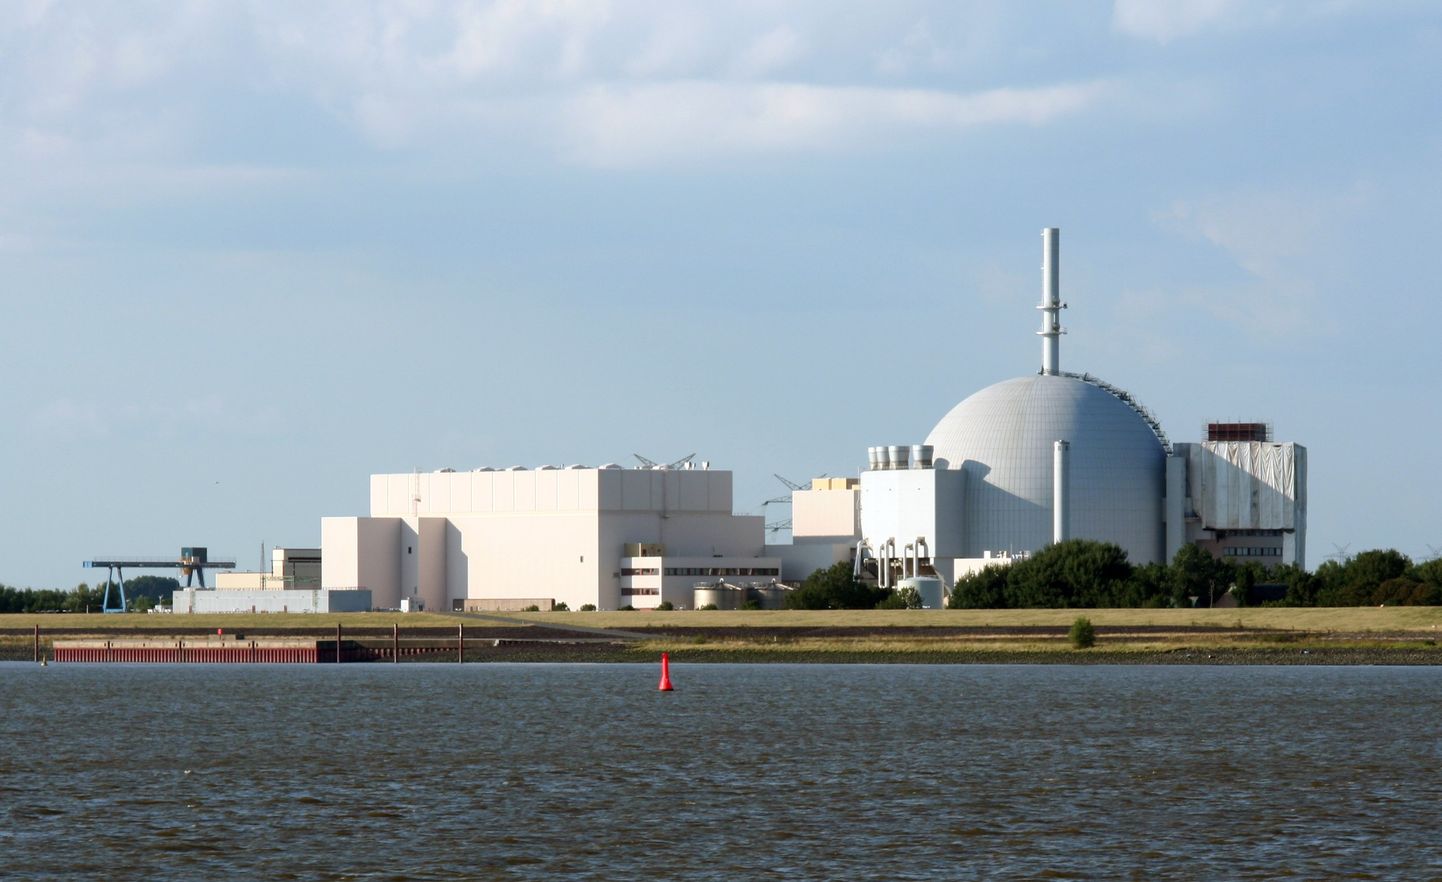 Vattenfallil osalusega on Saksamaal kolm tuumaelektrijaama. Neist loobumise eest makstakse ettevõttele 1,425 miljardit eurot. Pildil Brokdorfi tuumajaam Elbe jõe ääras